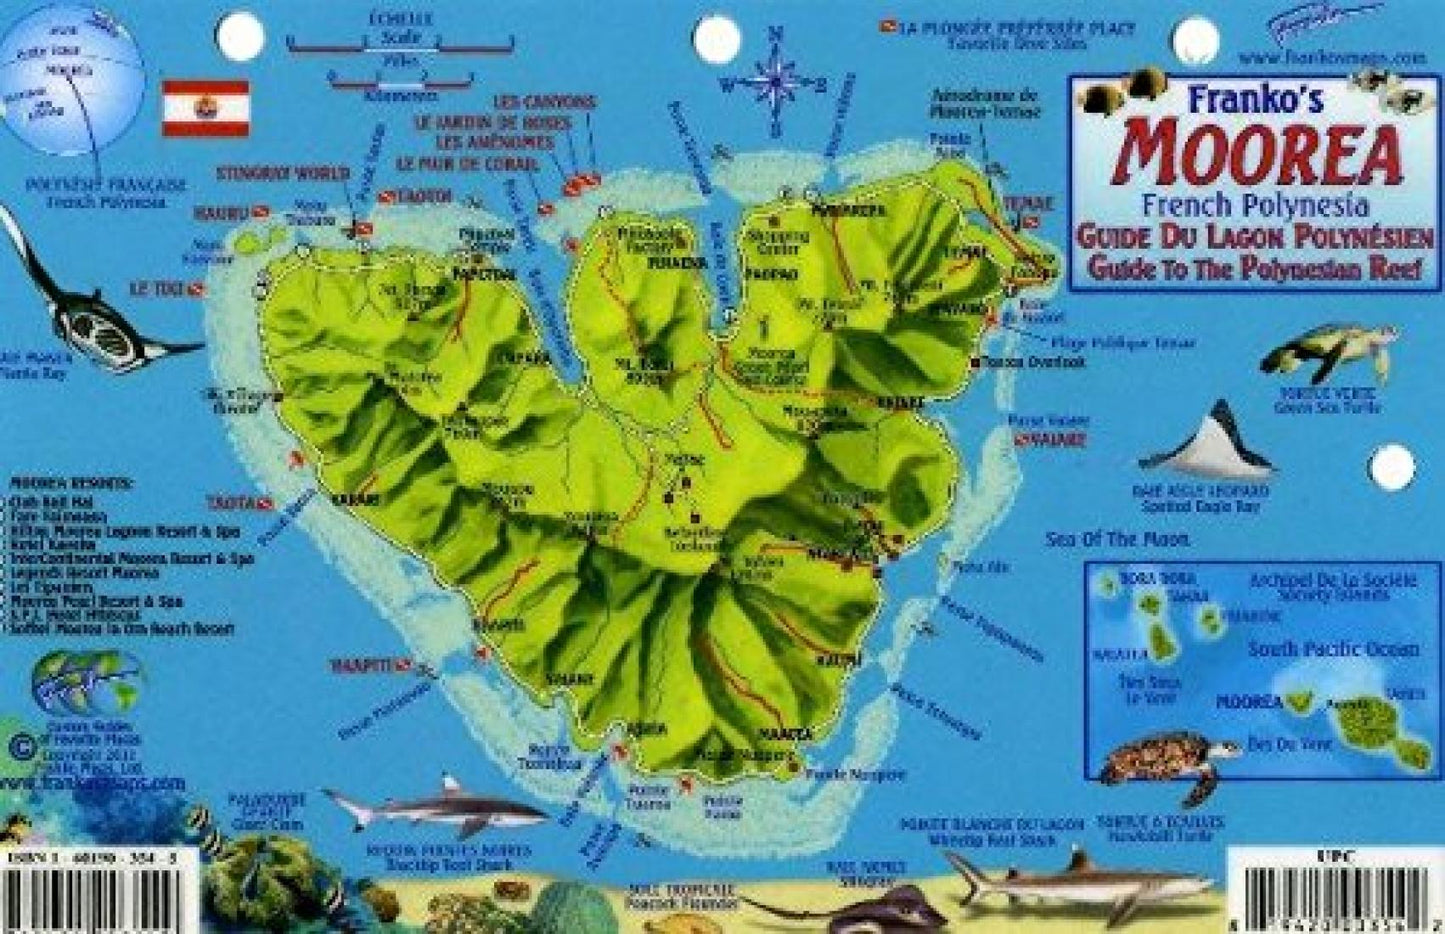 Franko's Moorea : French Polynesia : guide to the Polynesian Reef = fuide du Lagon Polynésien